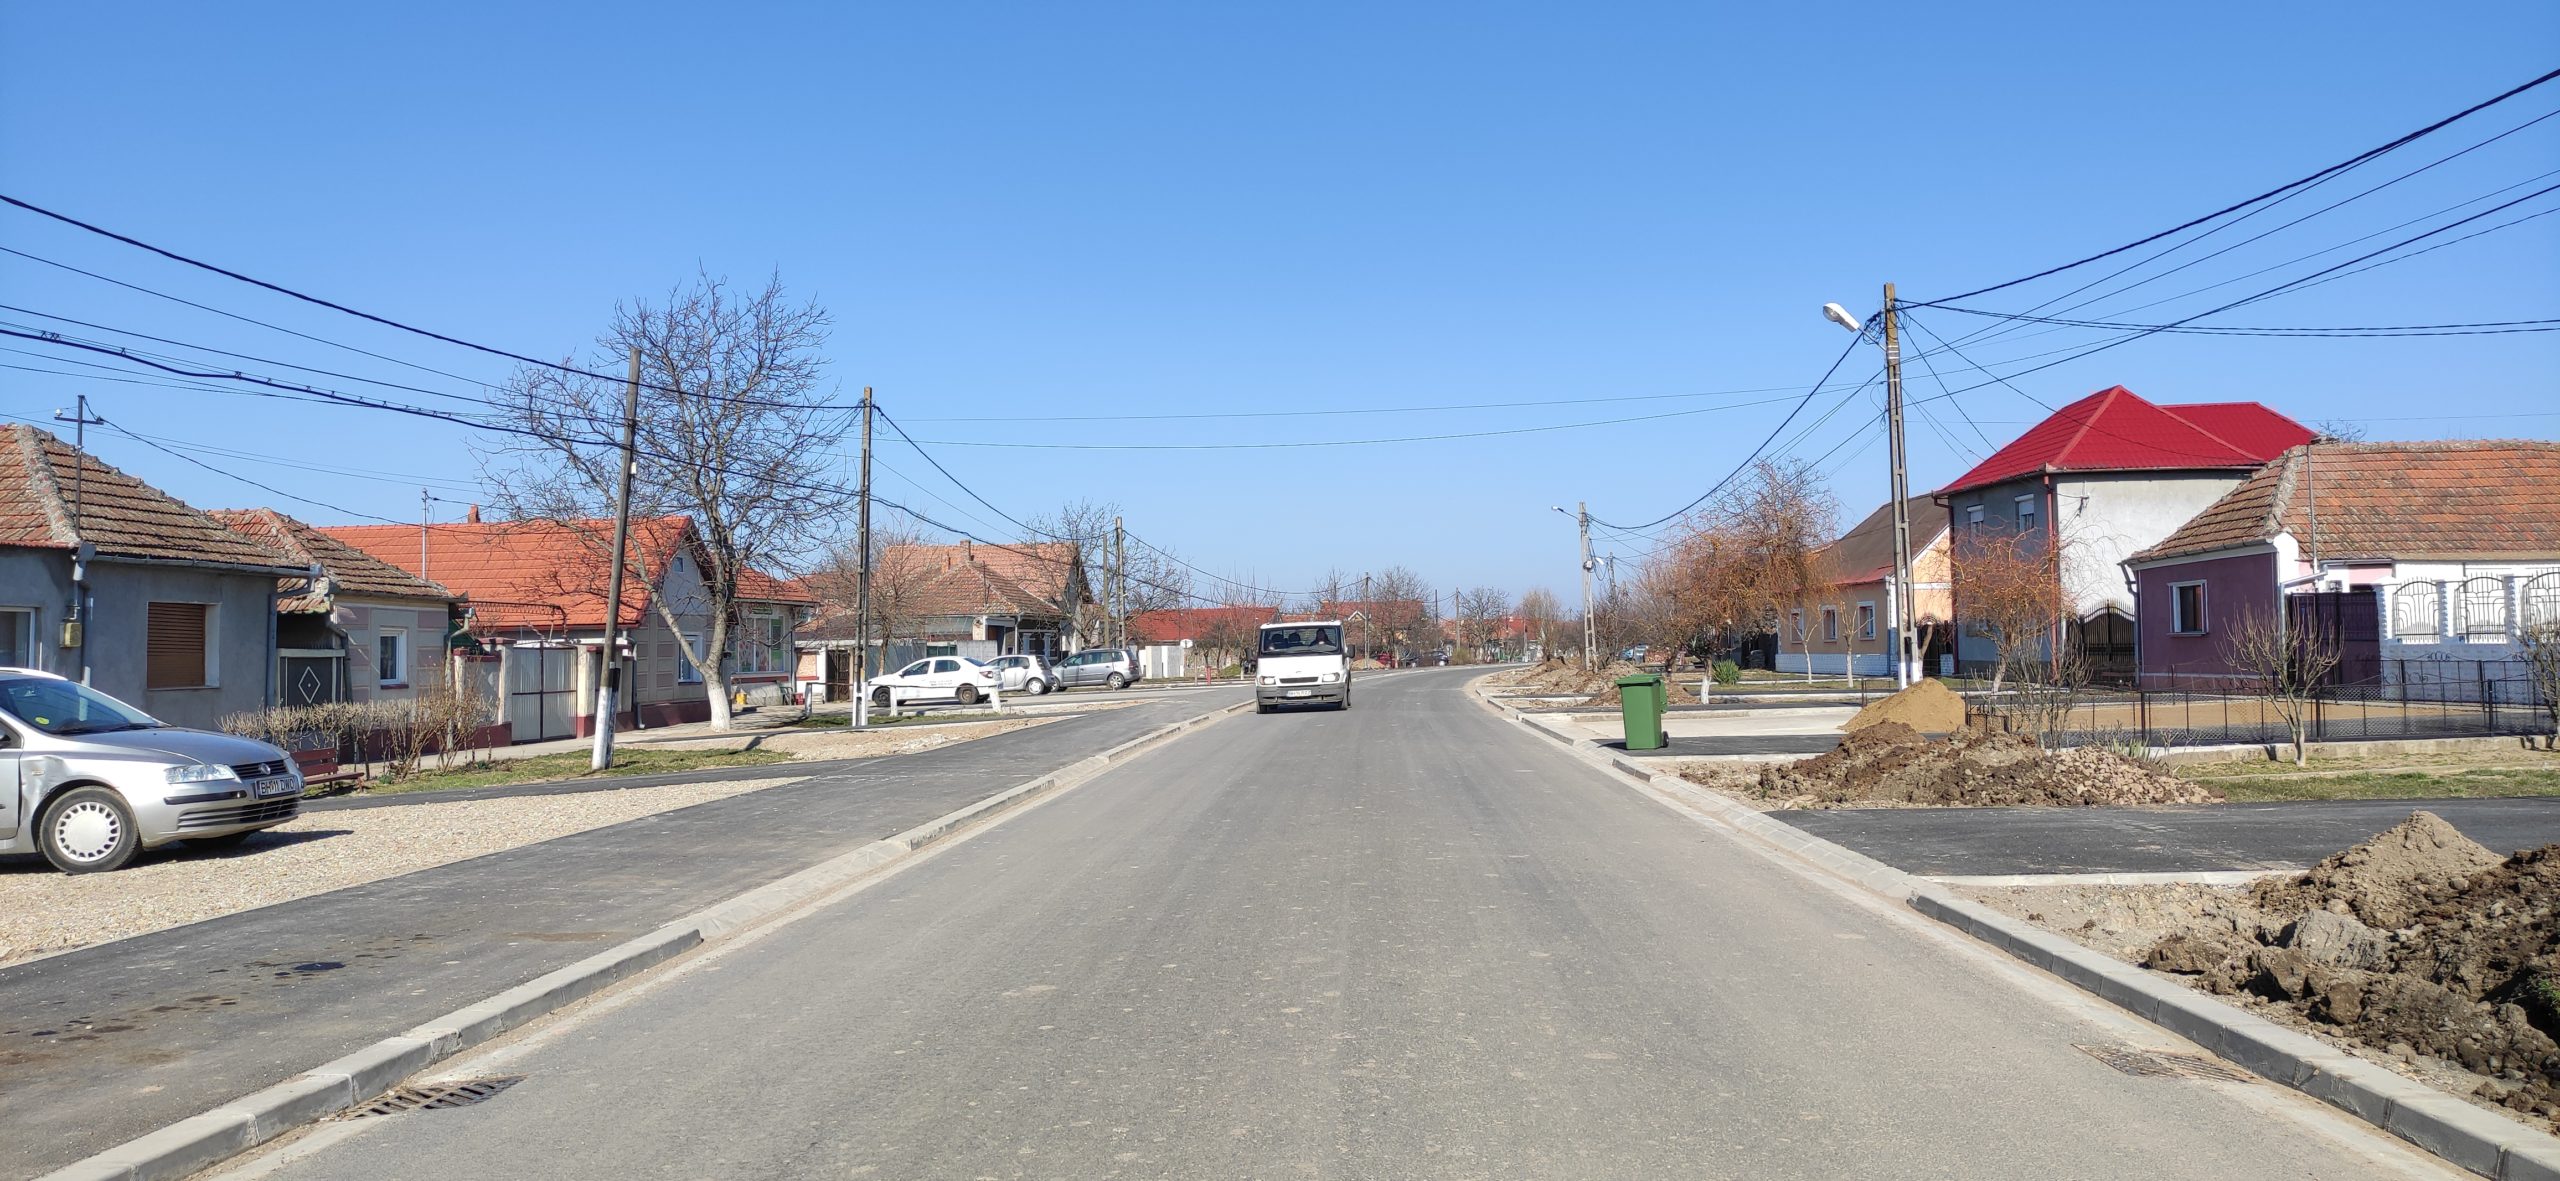 FOTO: Se modernizează Strada Mare din Cihei 08.03.2021